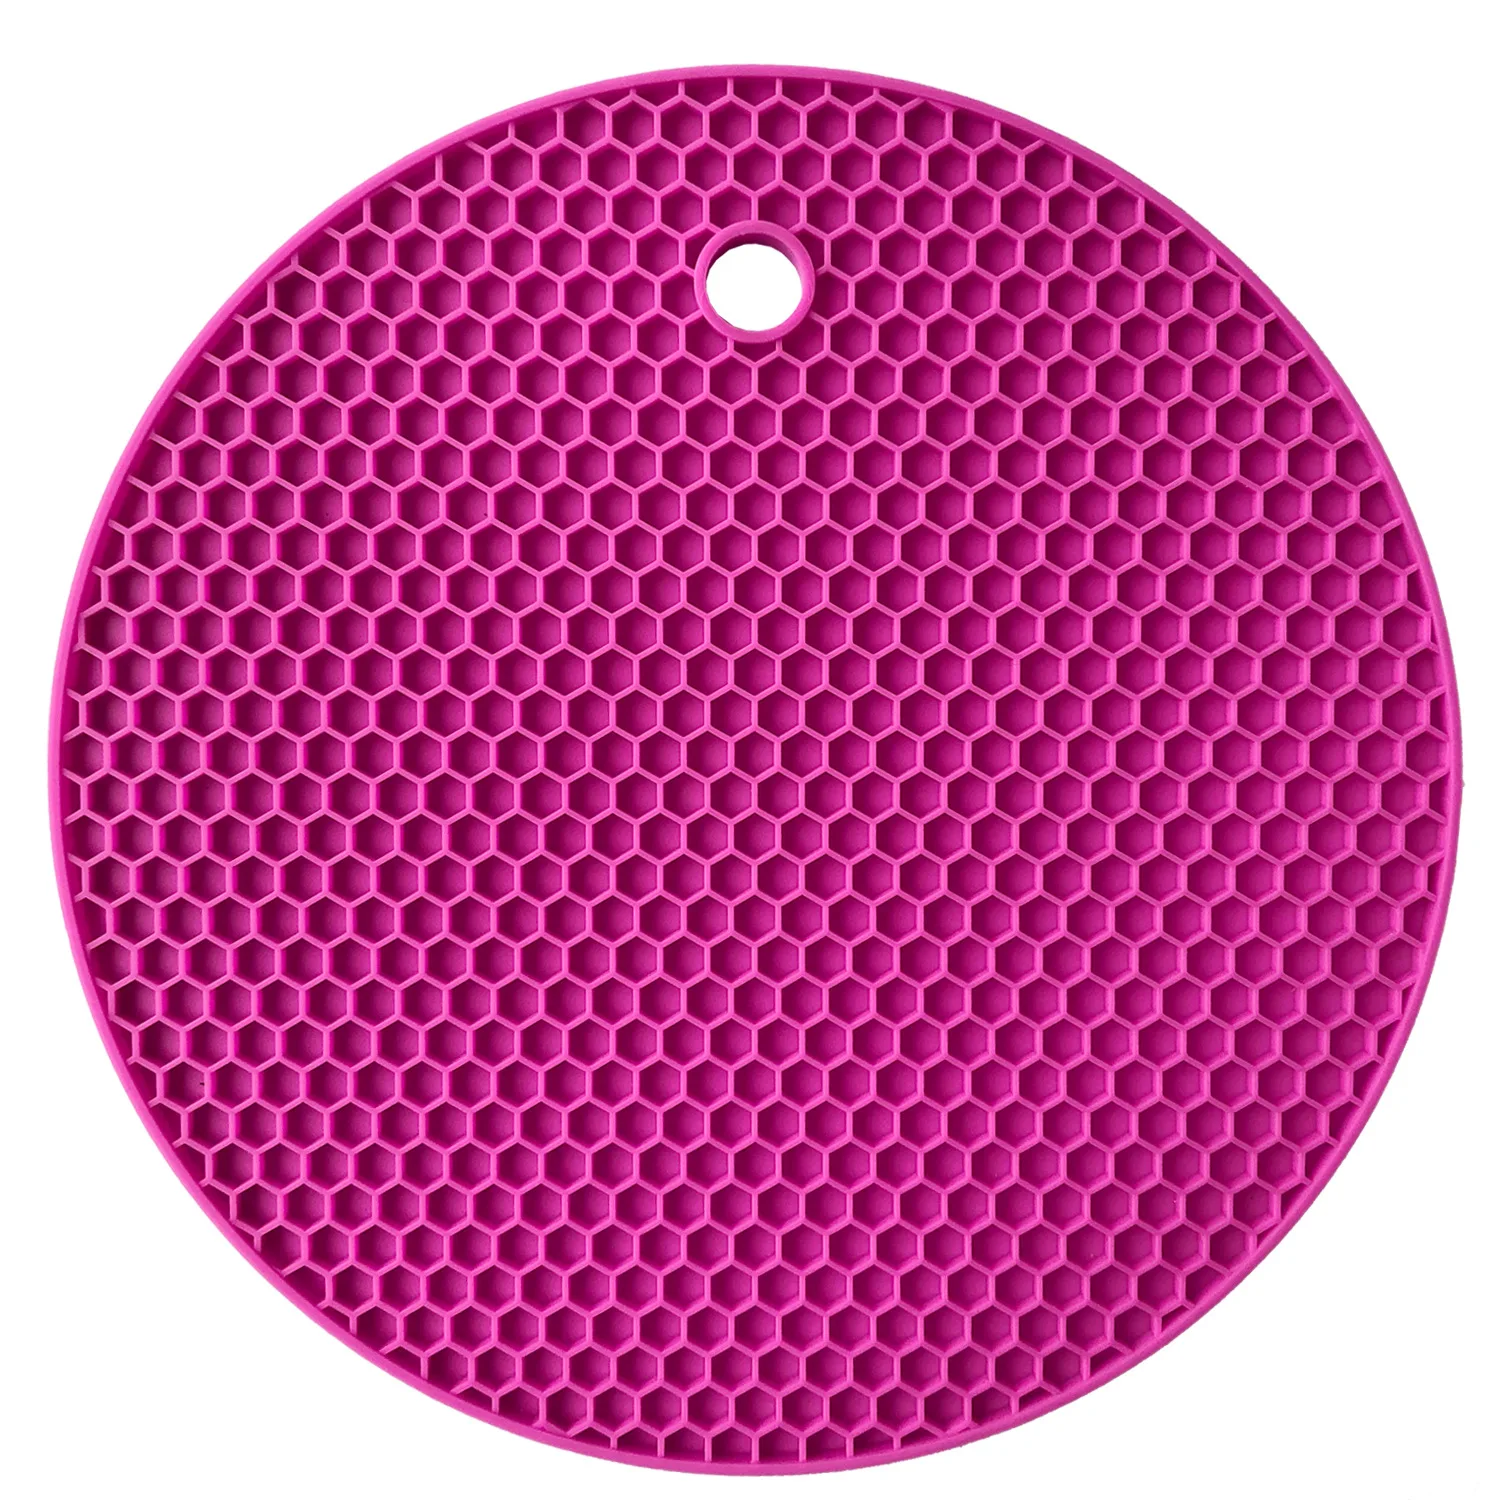 7 мм утолщаются 18 см круглый термостойкий силиконовый коврик подставки для кружек нескользящий держатель для кастрюли стол кухонная салфетка-подставка аксессуары - Цвет: Rose Red